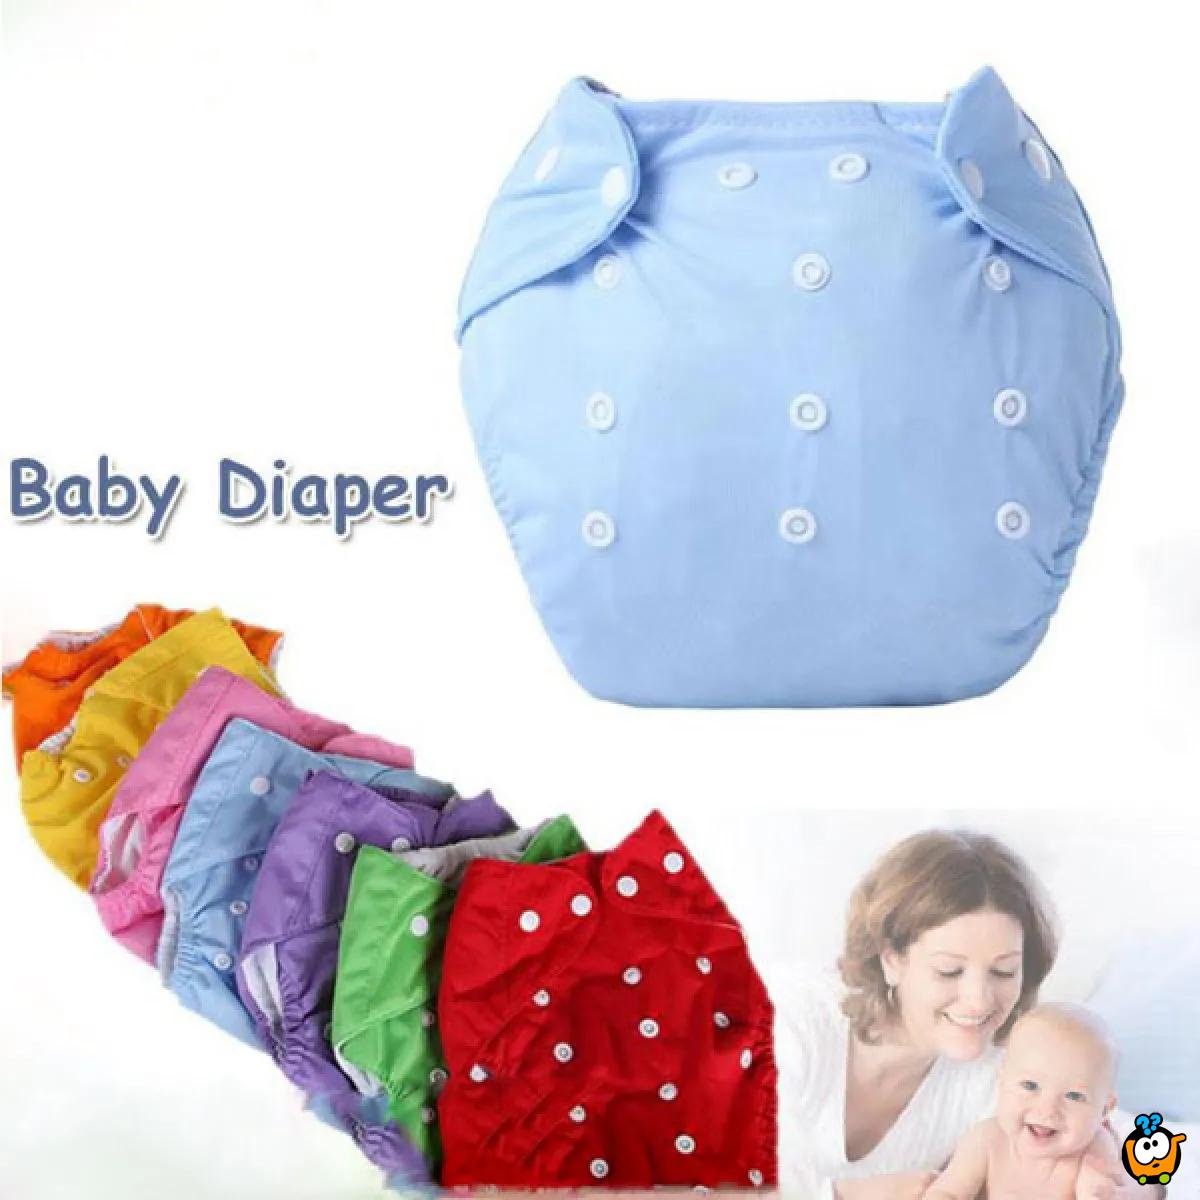 Nappy Diaper - Platnene pelene za bebe